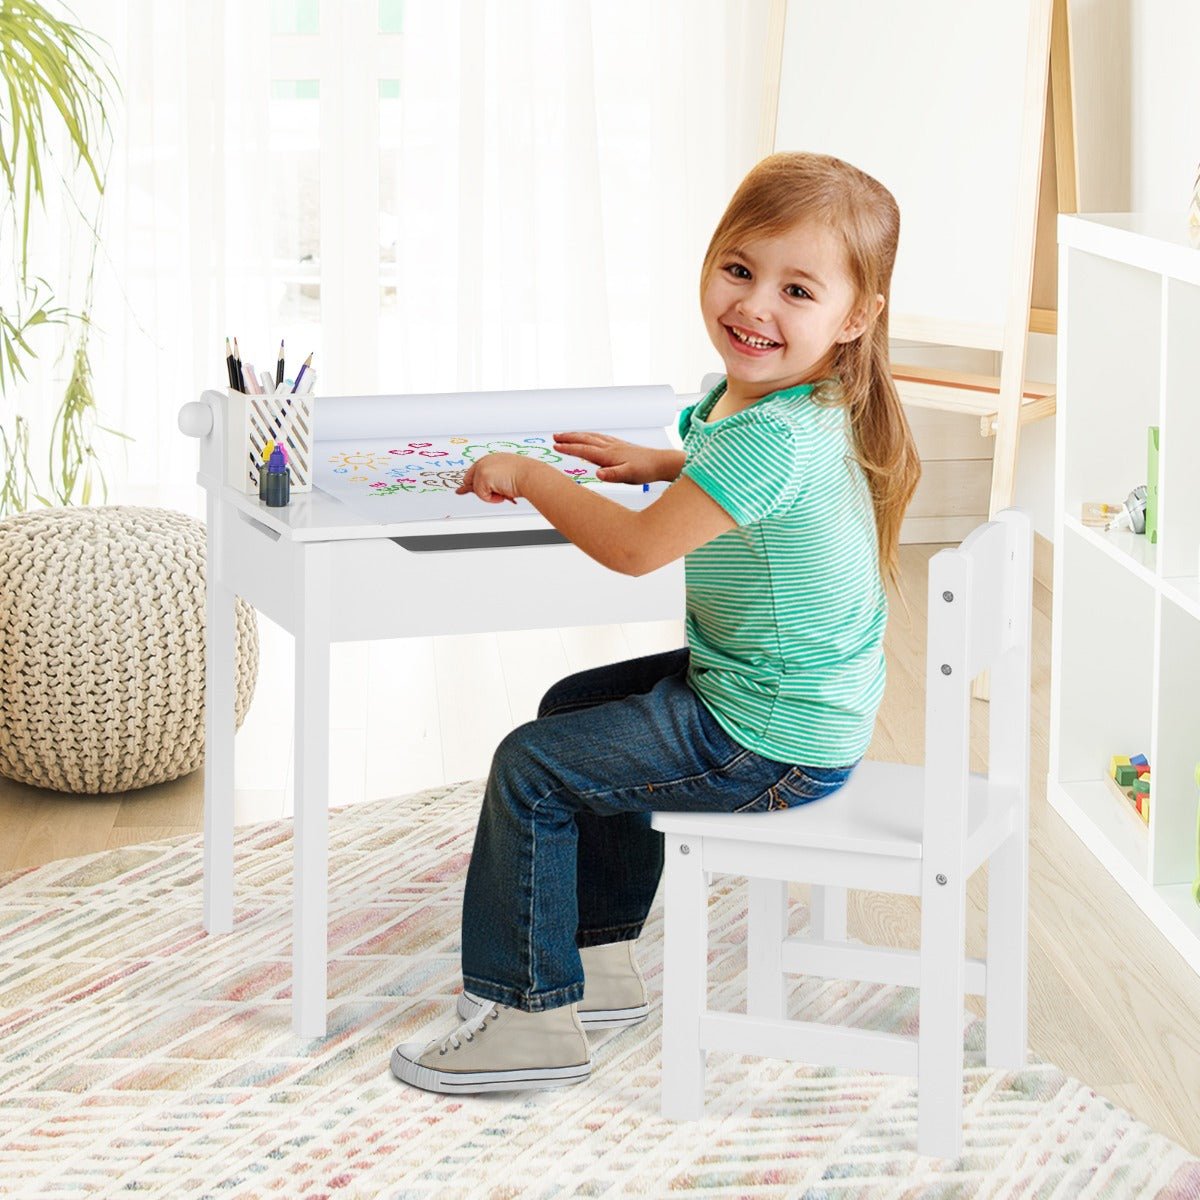 Children's Craft Desk & Chair Set: Paper Roll Holder for Skill Development